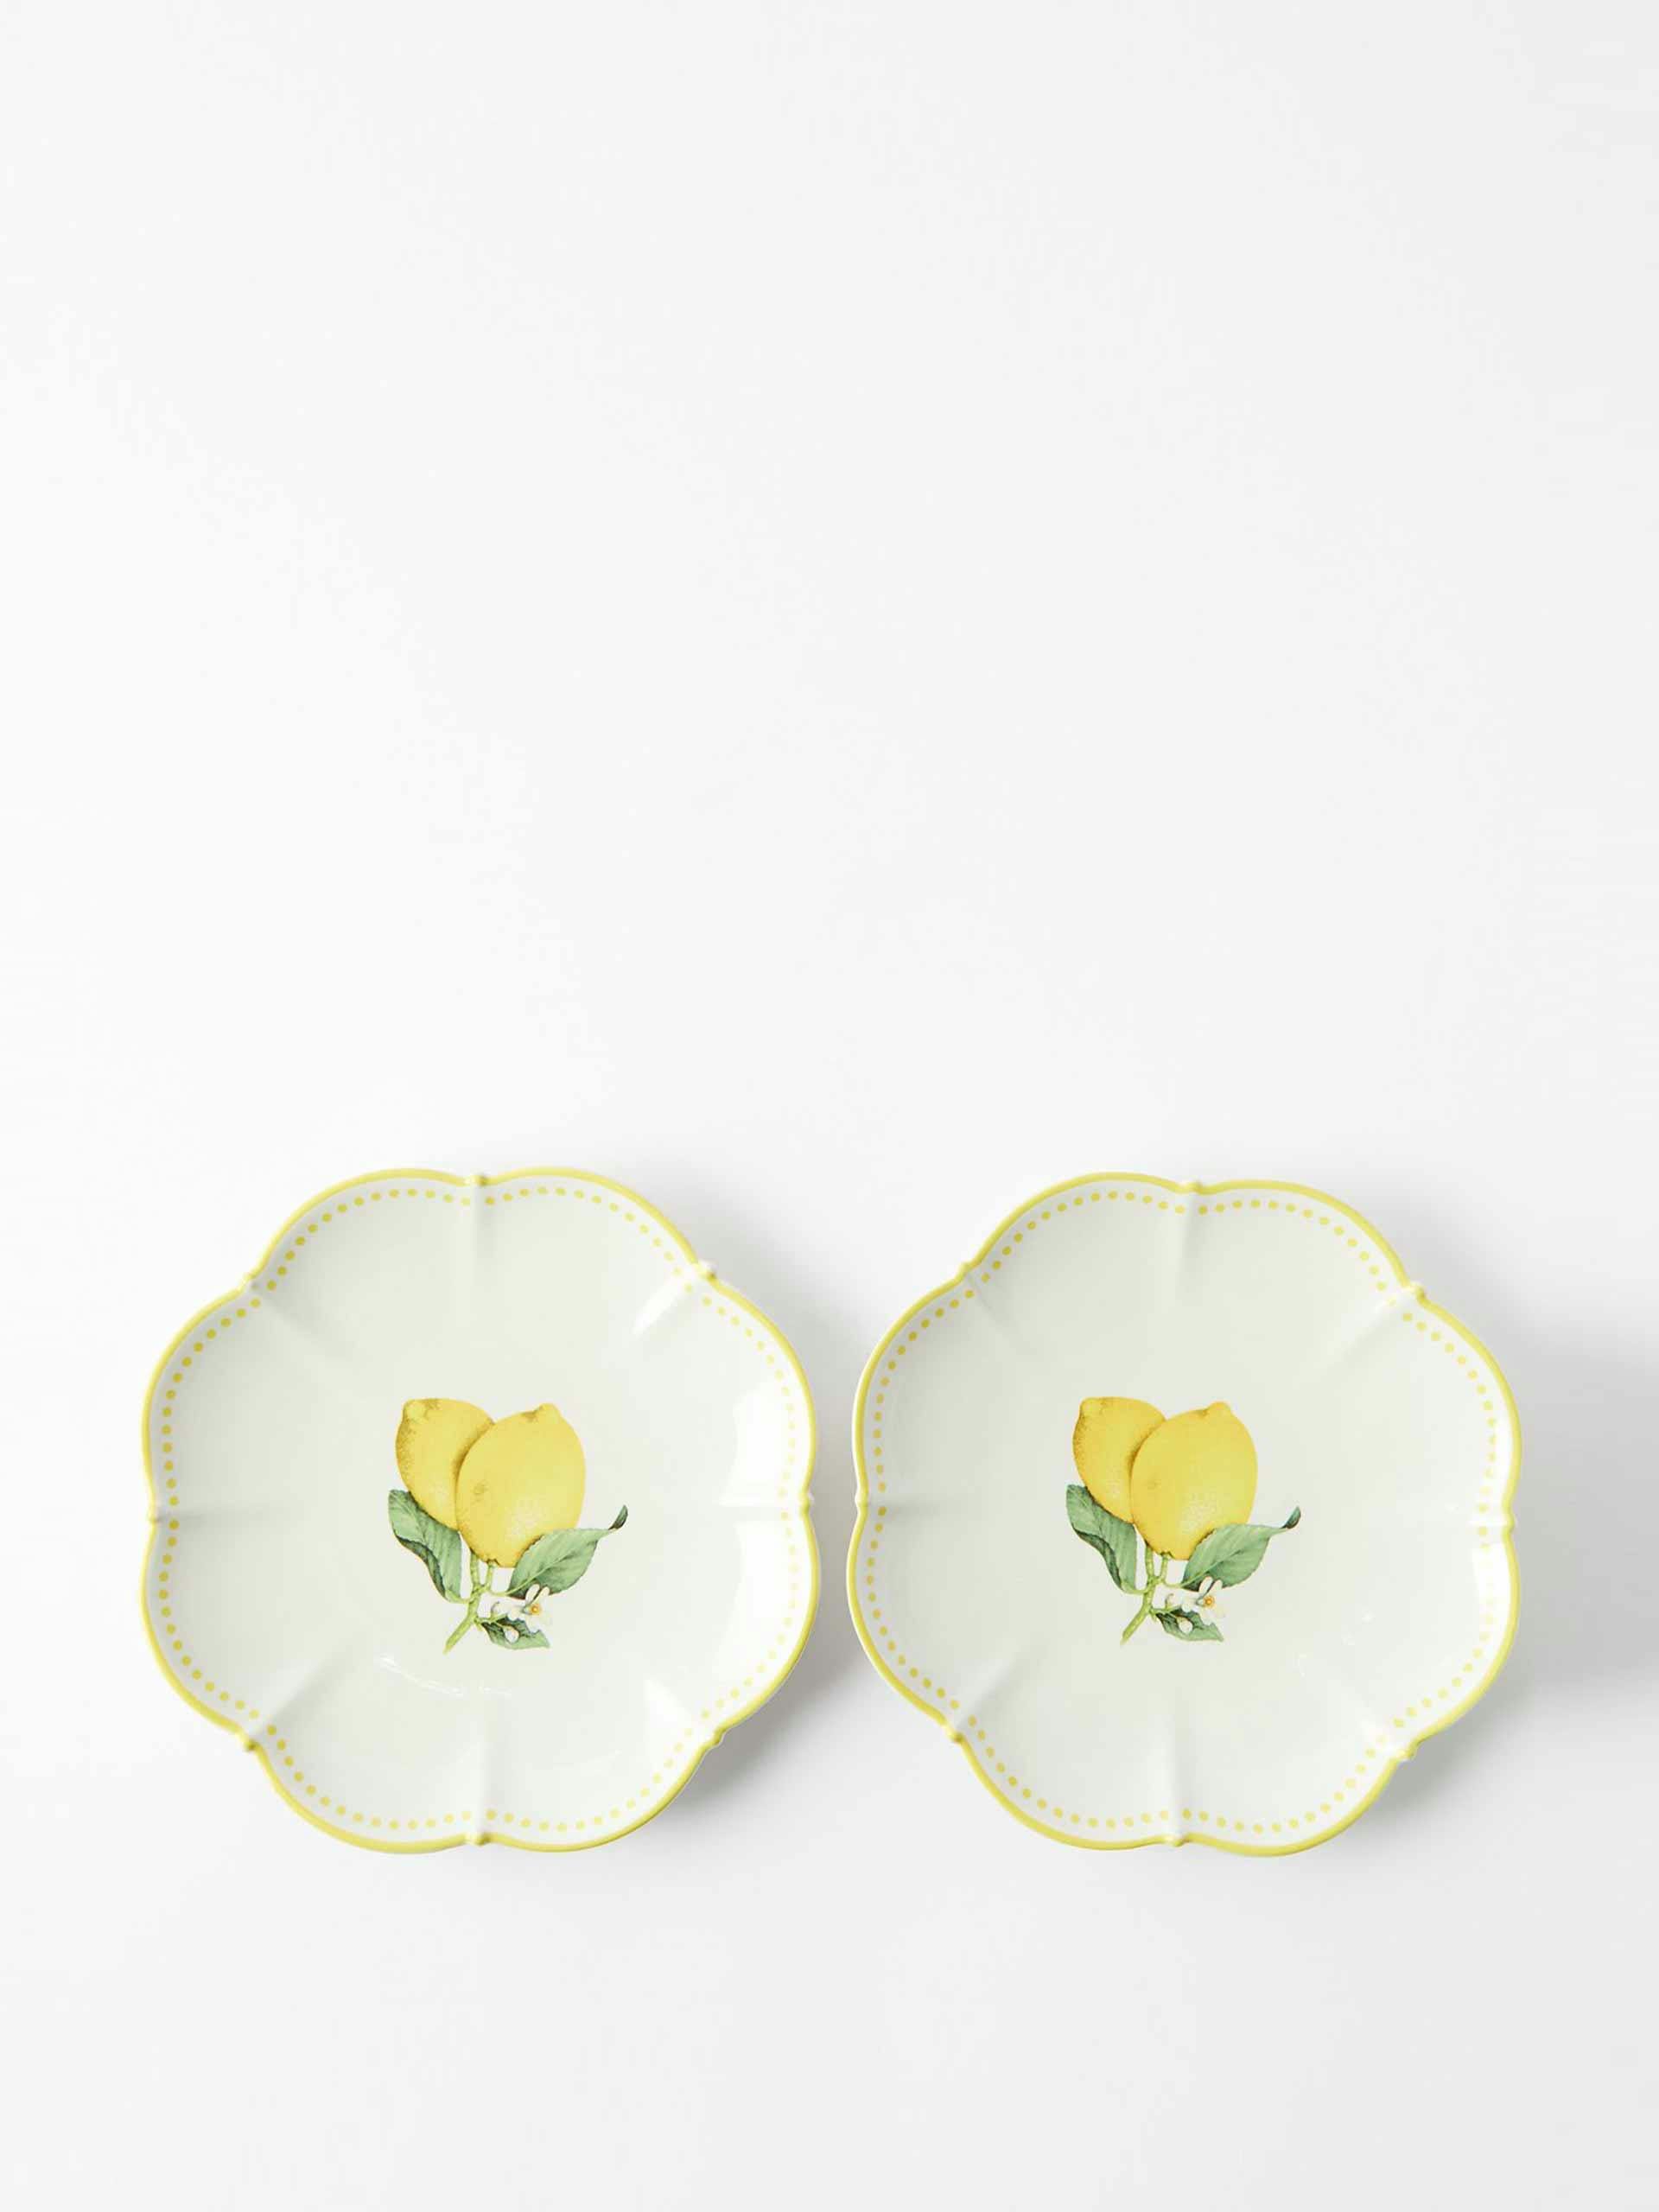 Lemon stoneware dinner plate ( set of two )